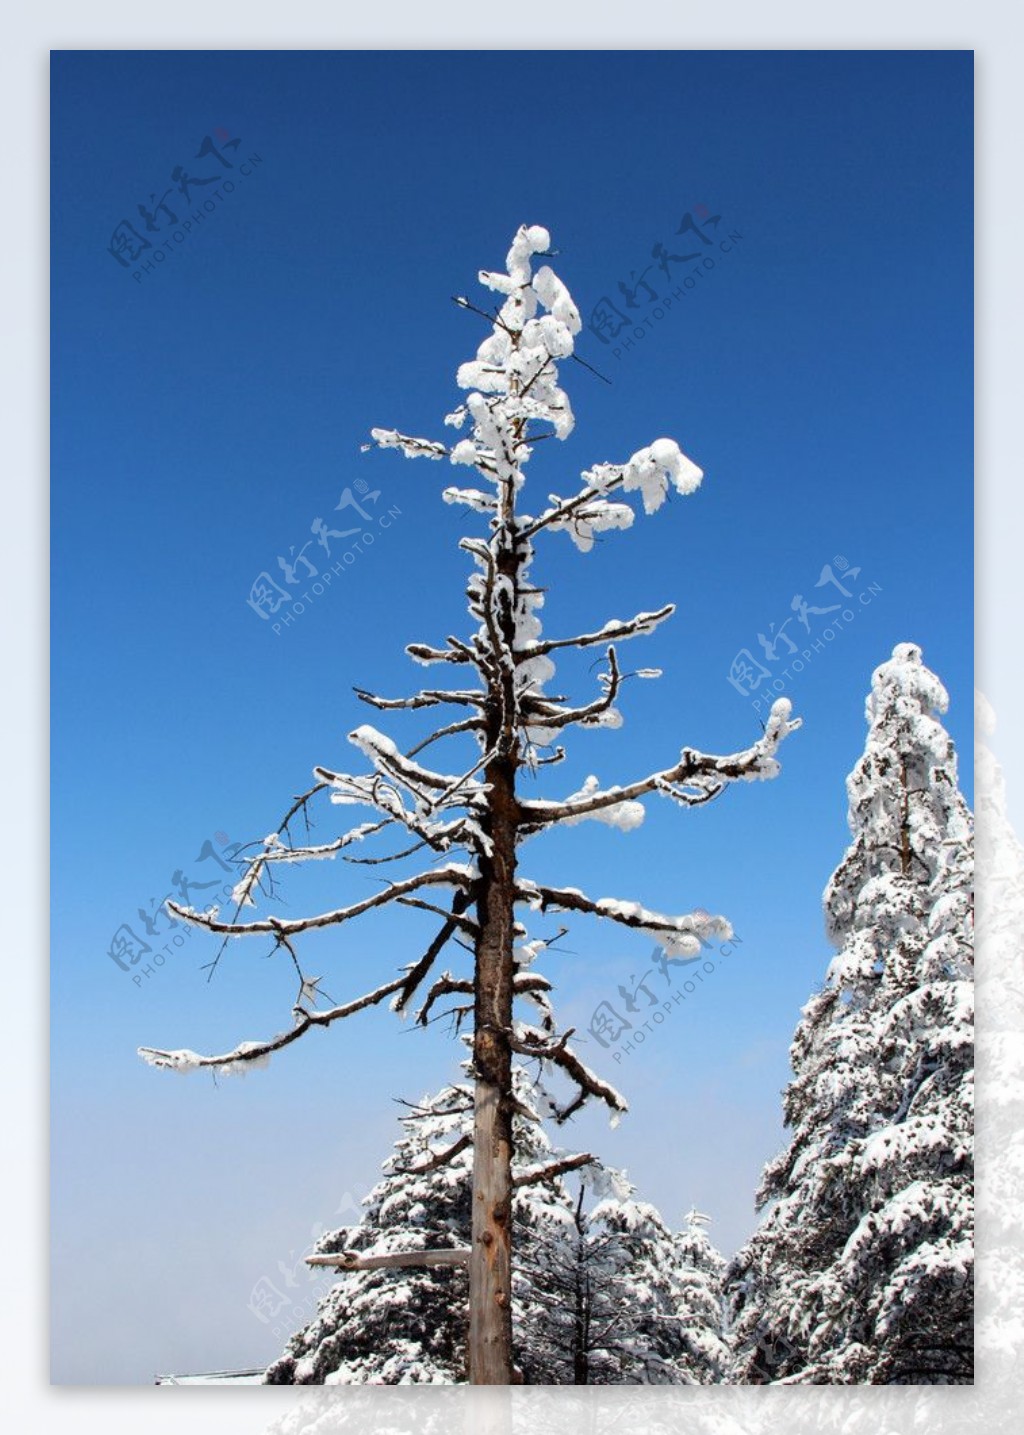 峨眉山雪景雪景图片